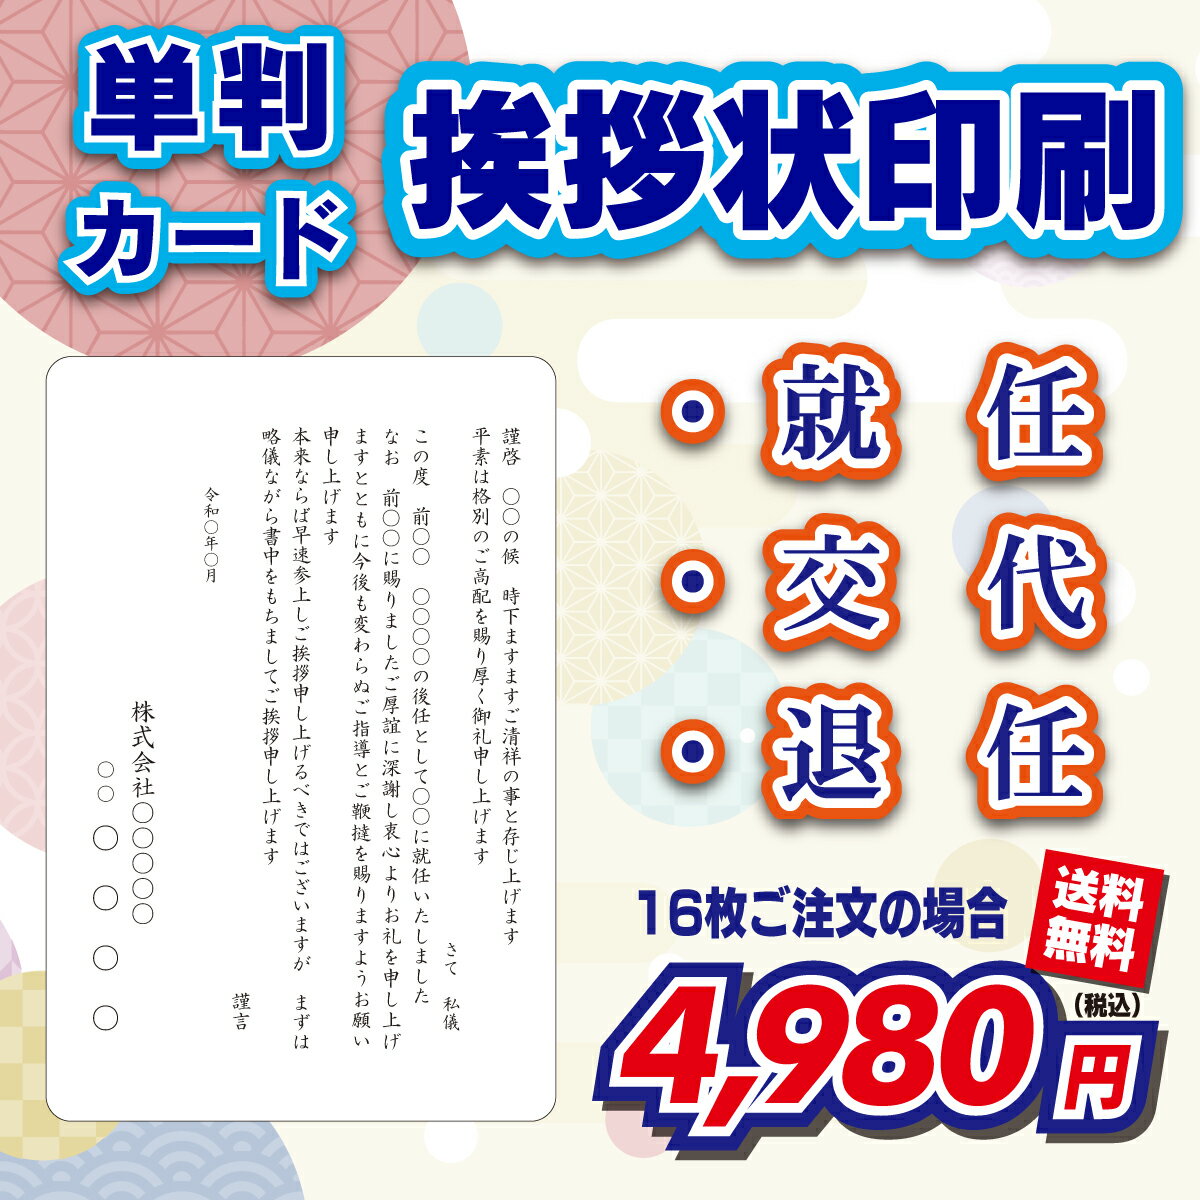 ポストカード アート モネ「日本の橋」105×150mm 名画 メッセージカード 郵便はがき コレクション(HZN3038)